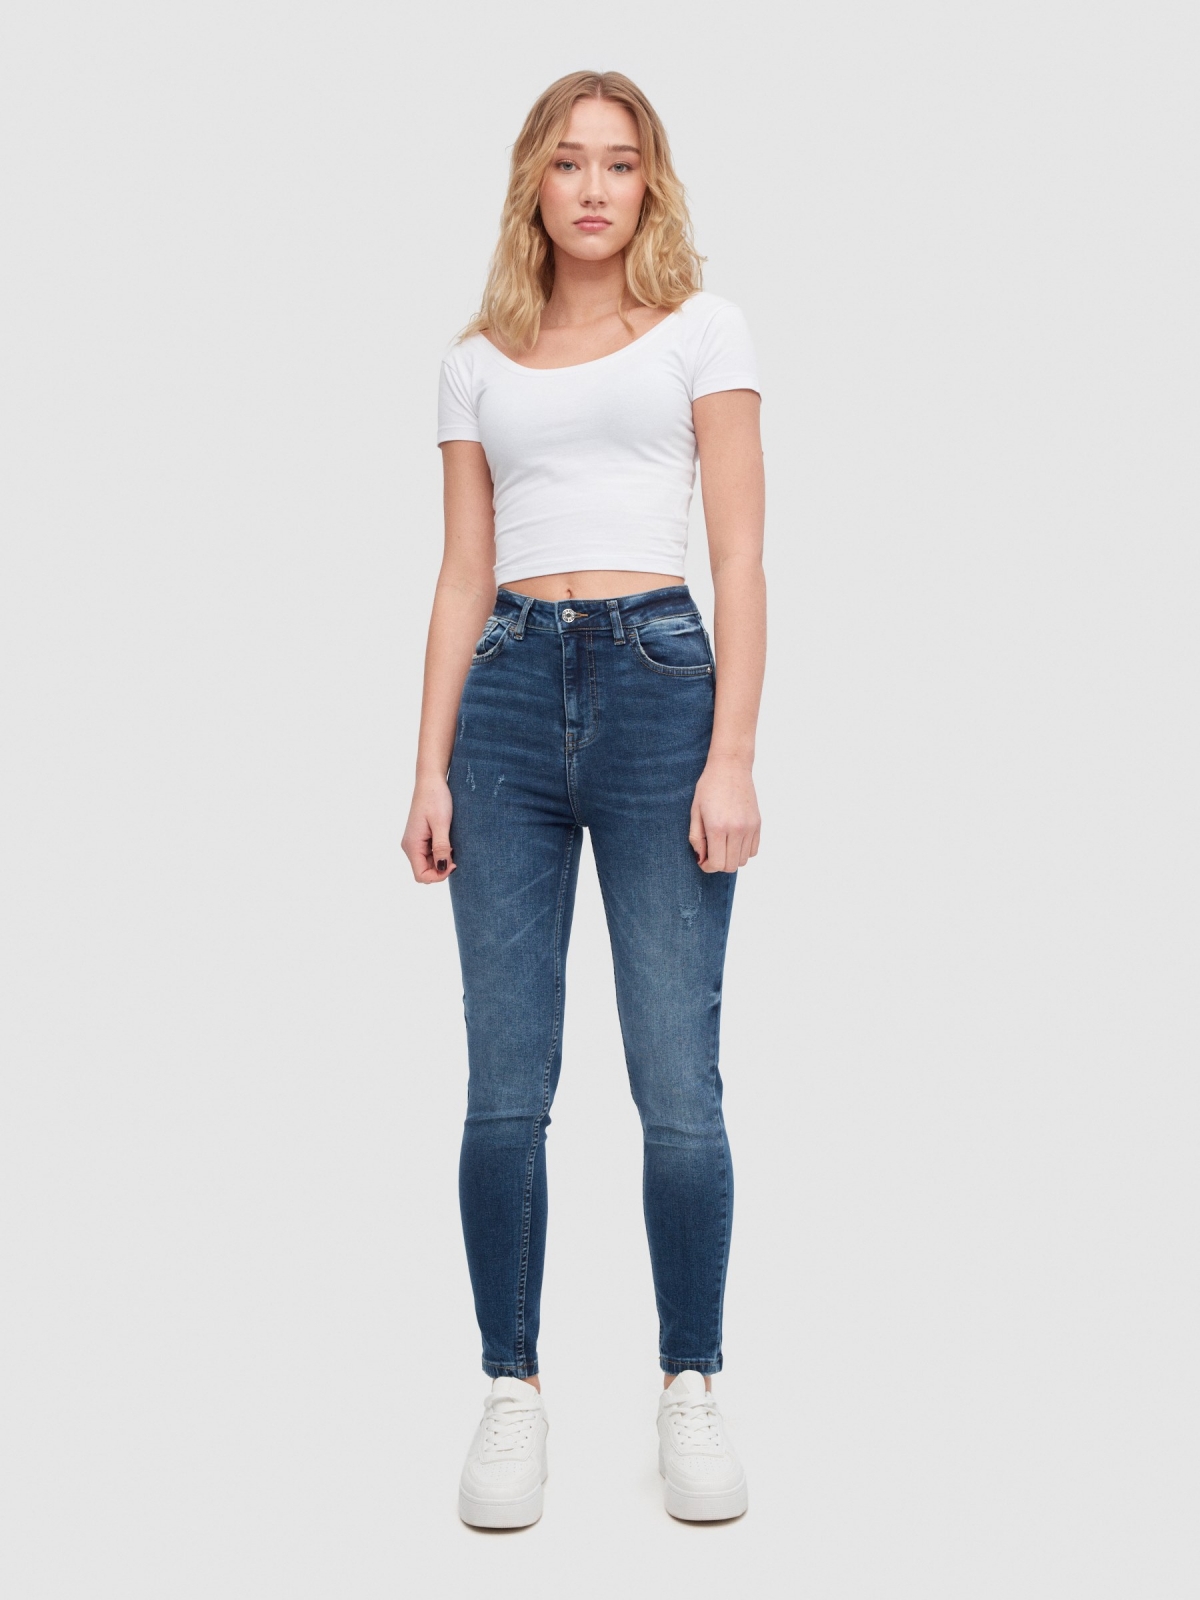 Jeans skinny de cintura alta desgaste azul escuro vista geral frontal